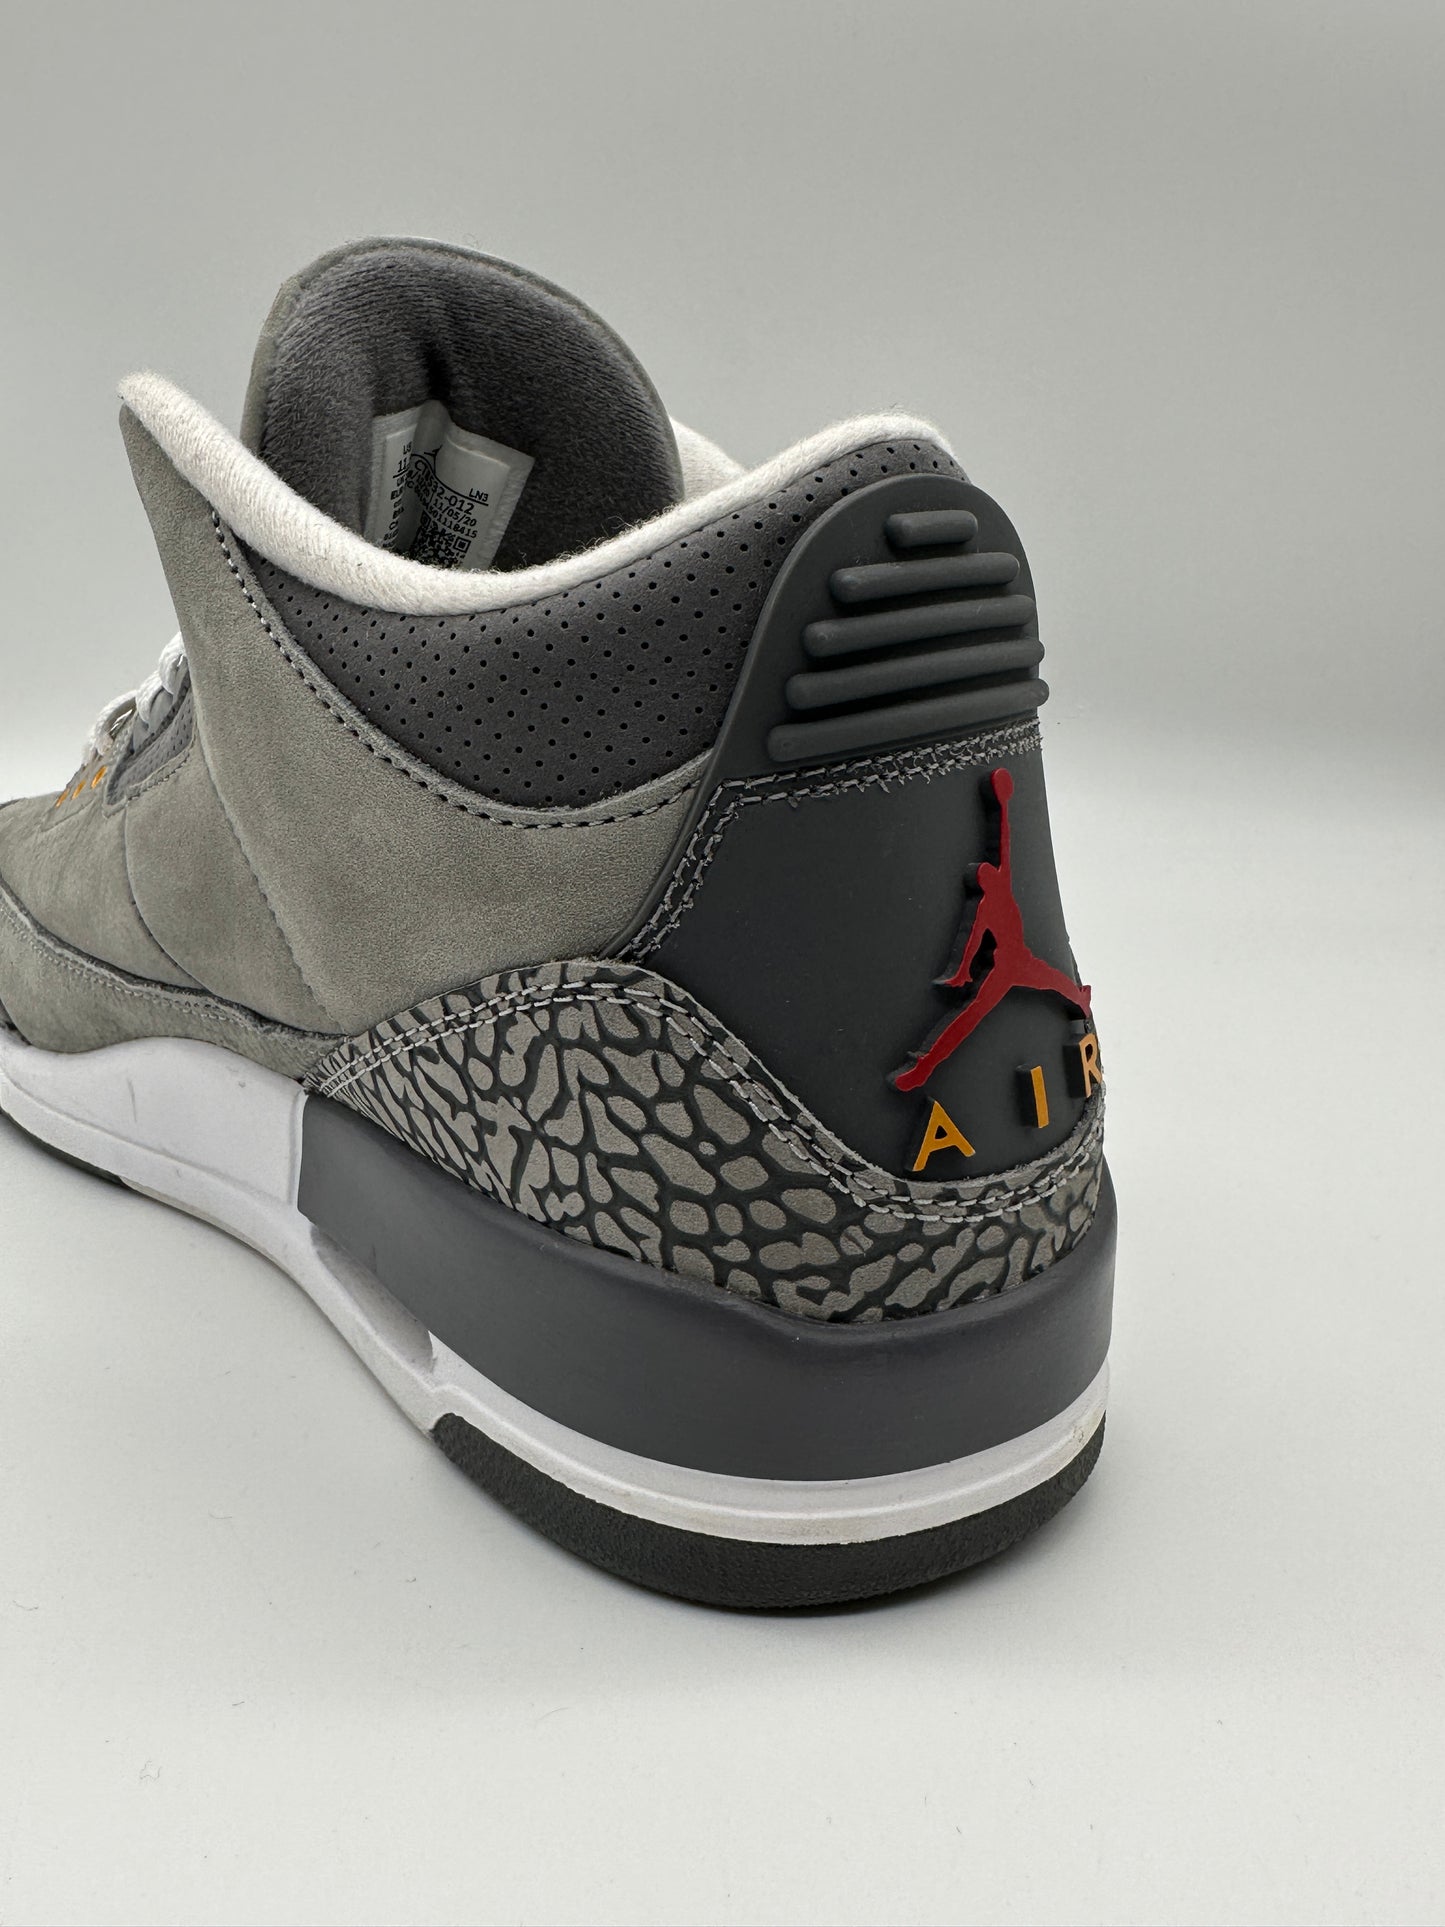 Jordan 3 Suede Sneakers